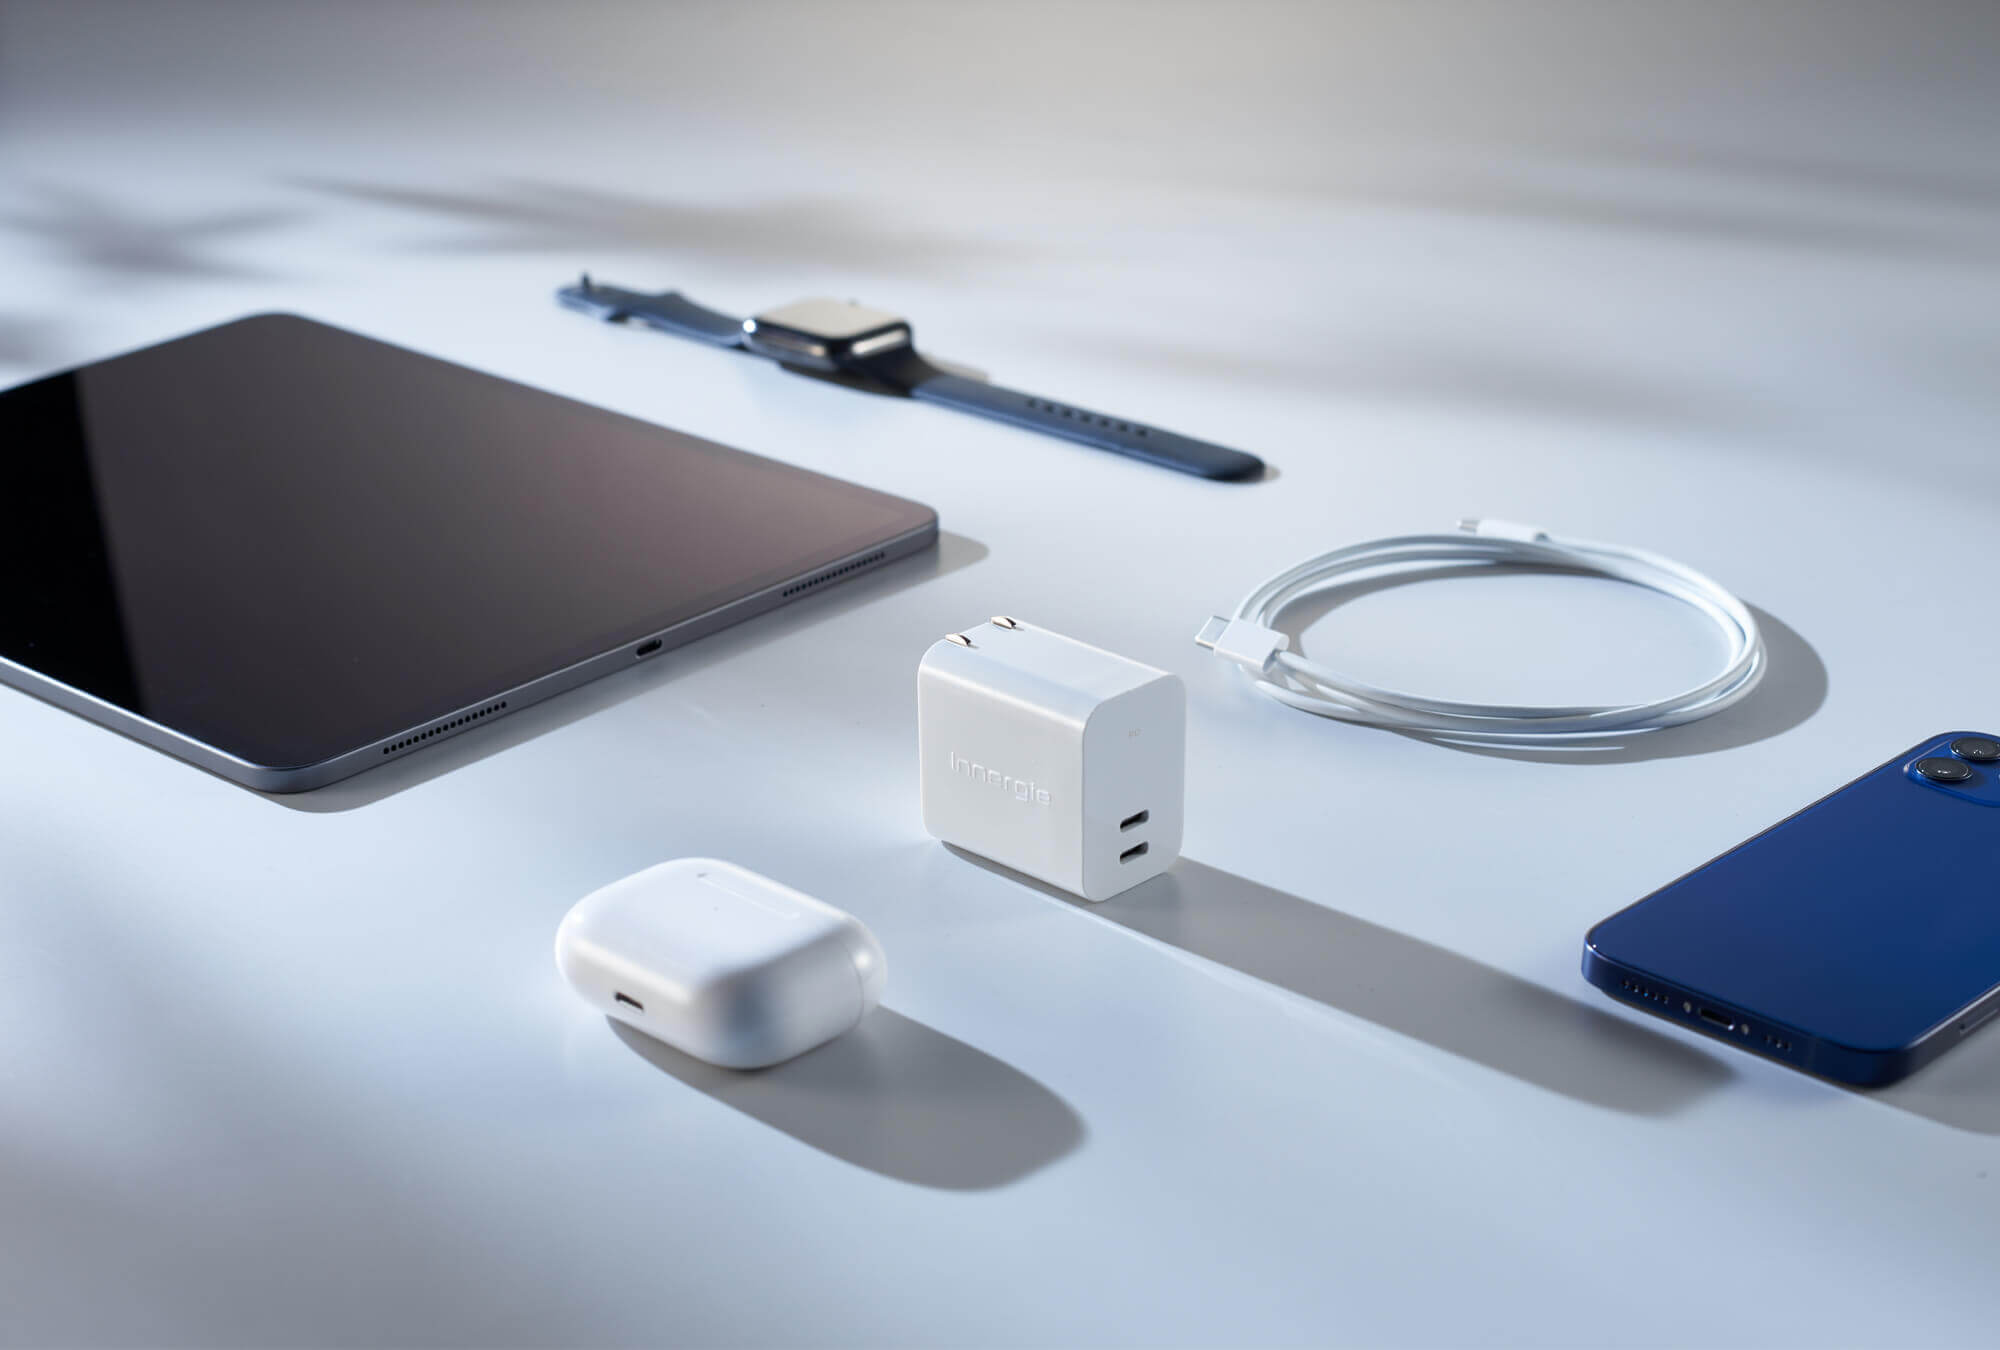 Apple 產品沒附充電器怎麼辦 Ipad充電器可與iphone共用嗎 Innergie 台灣